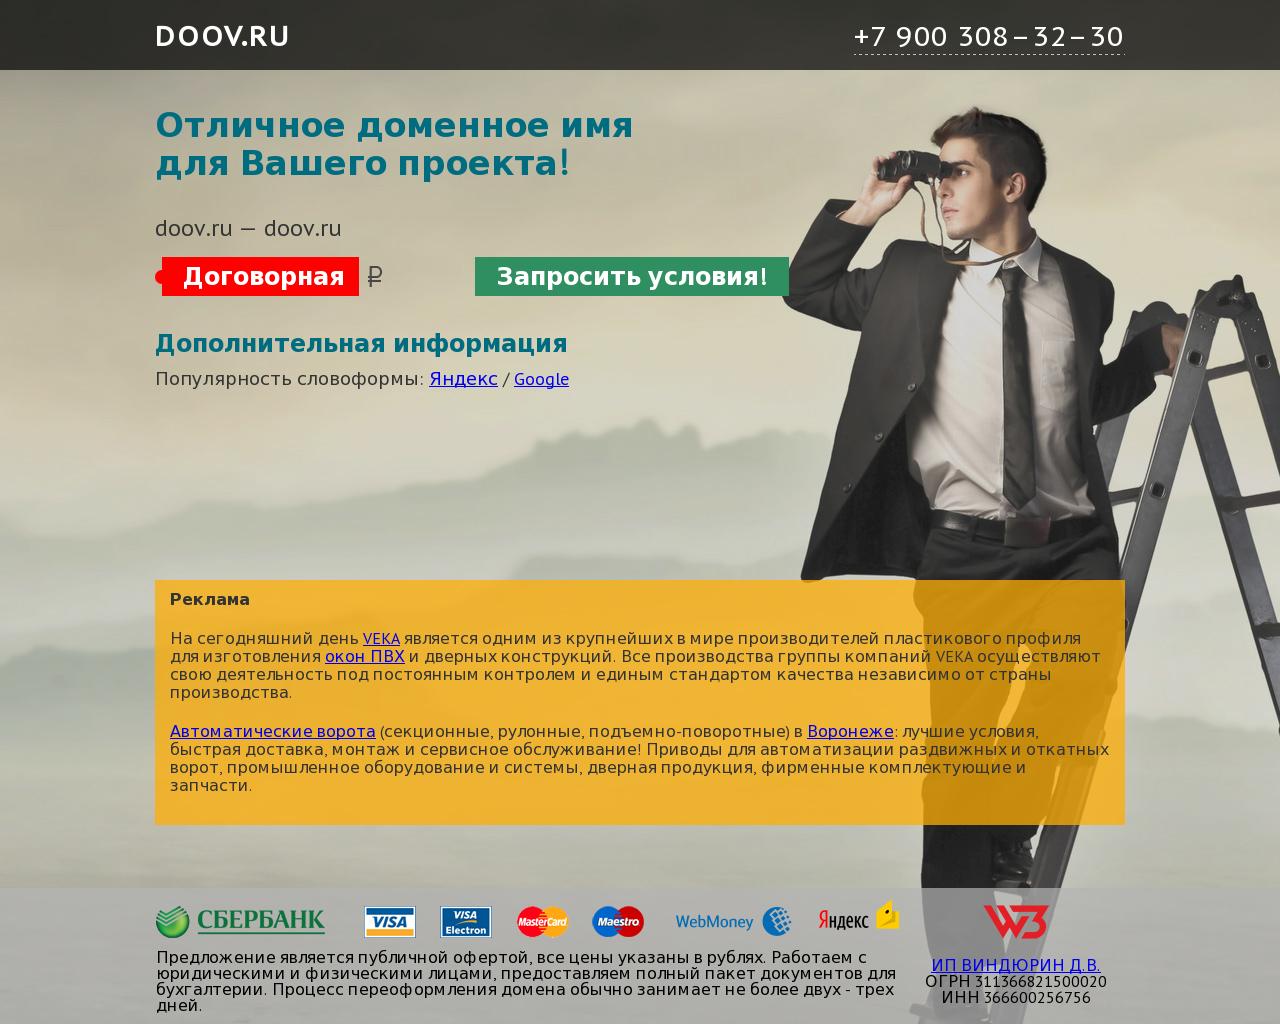 Изображение сайта doov.ru в разрешении 1280x1024